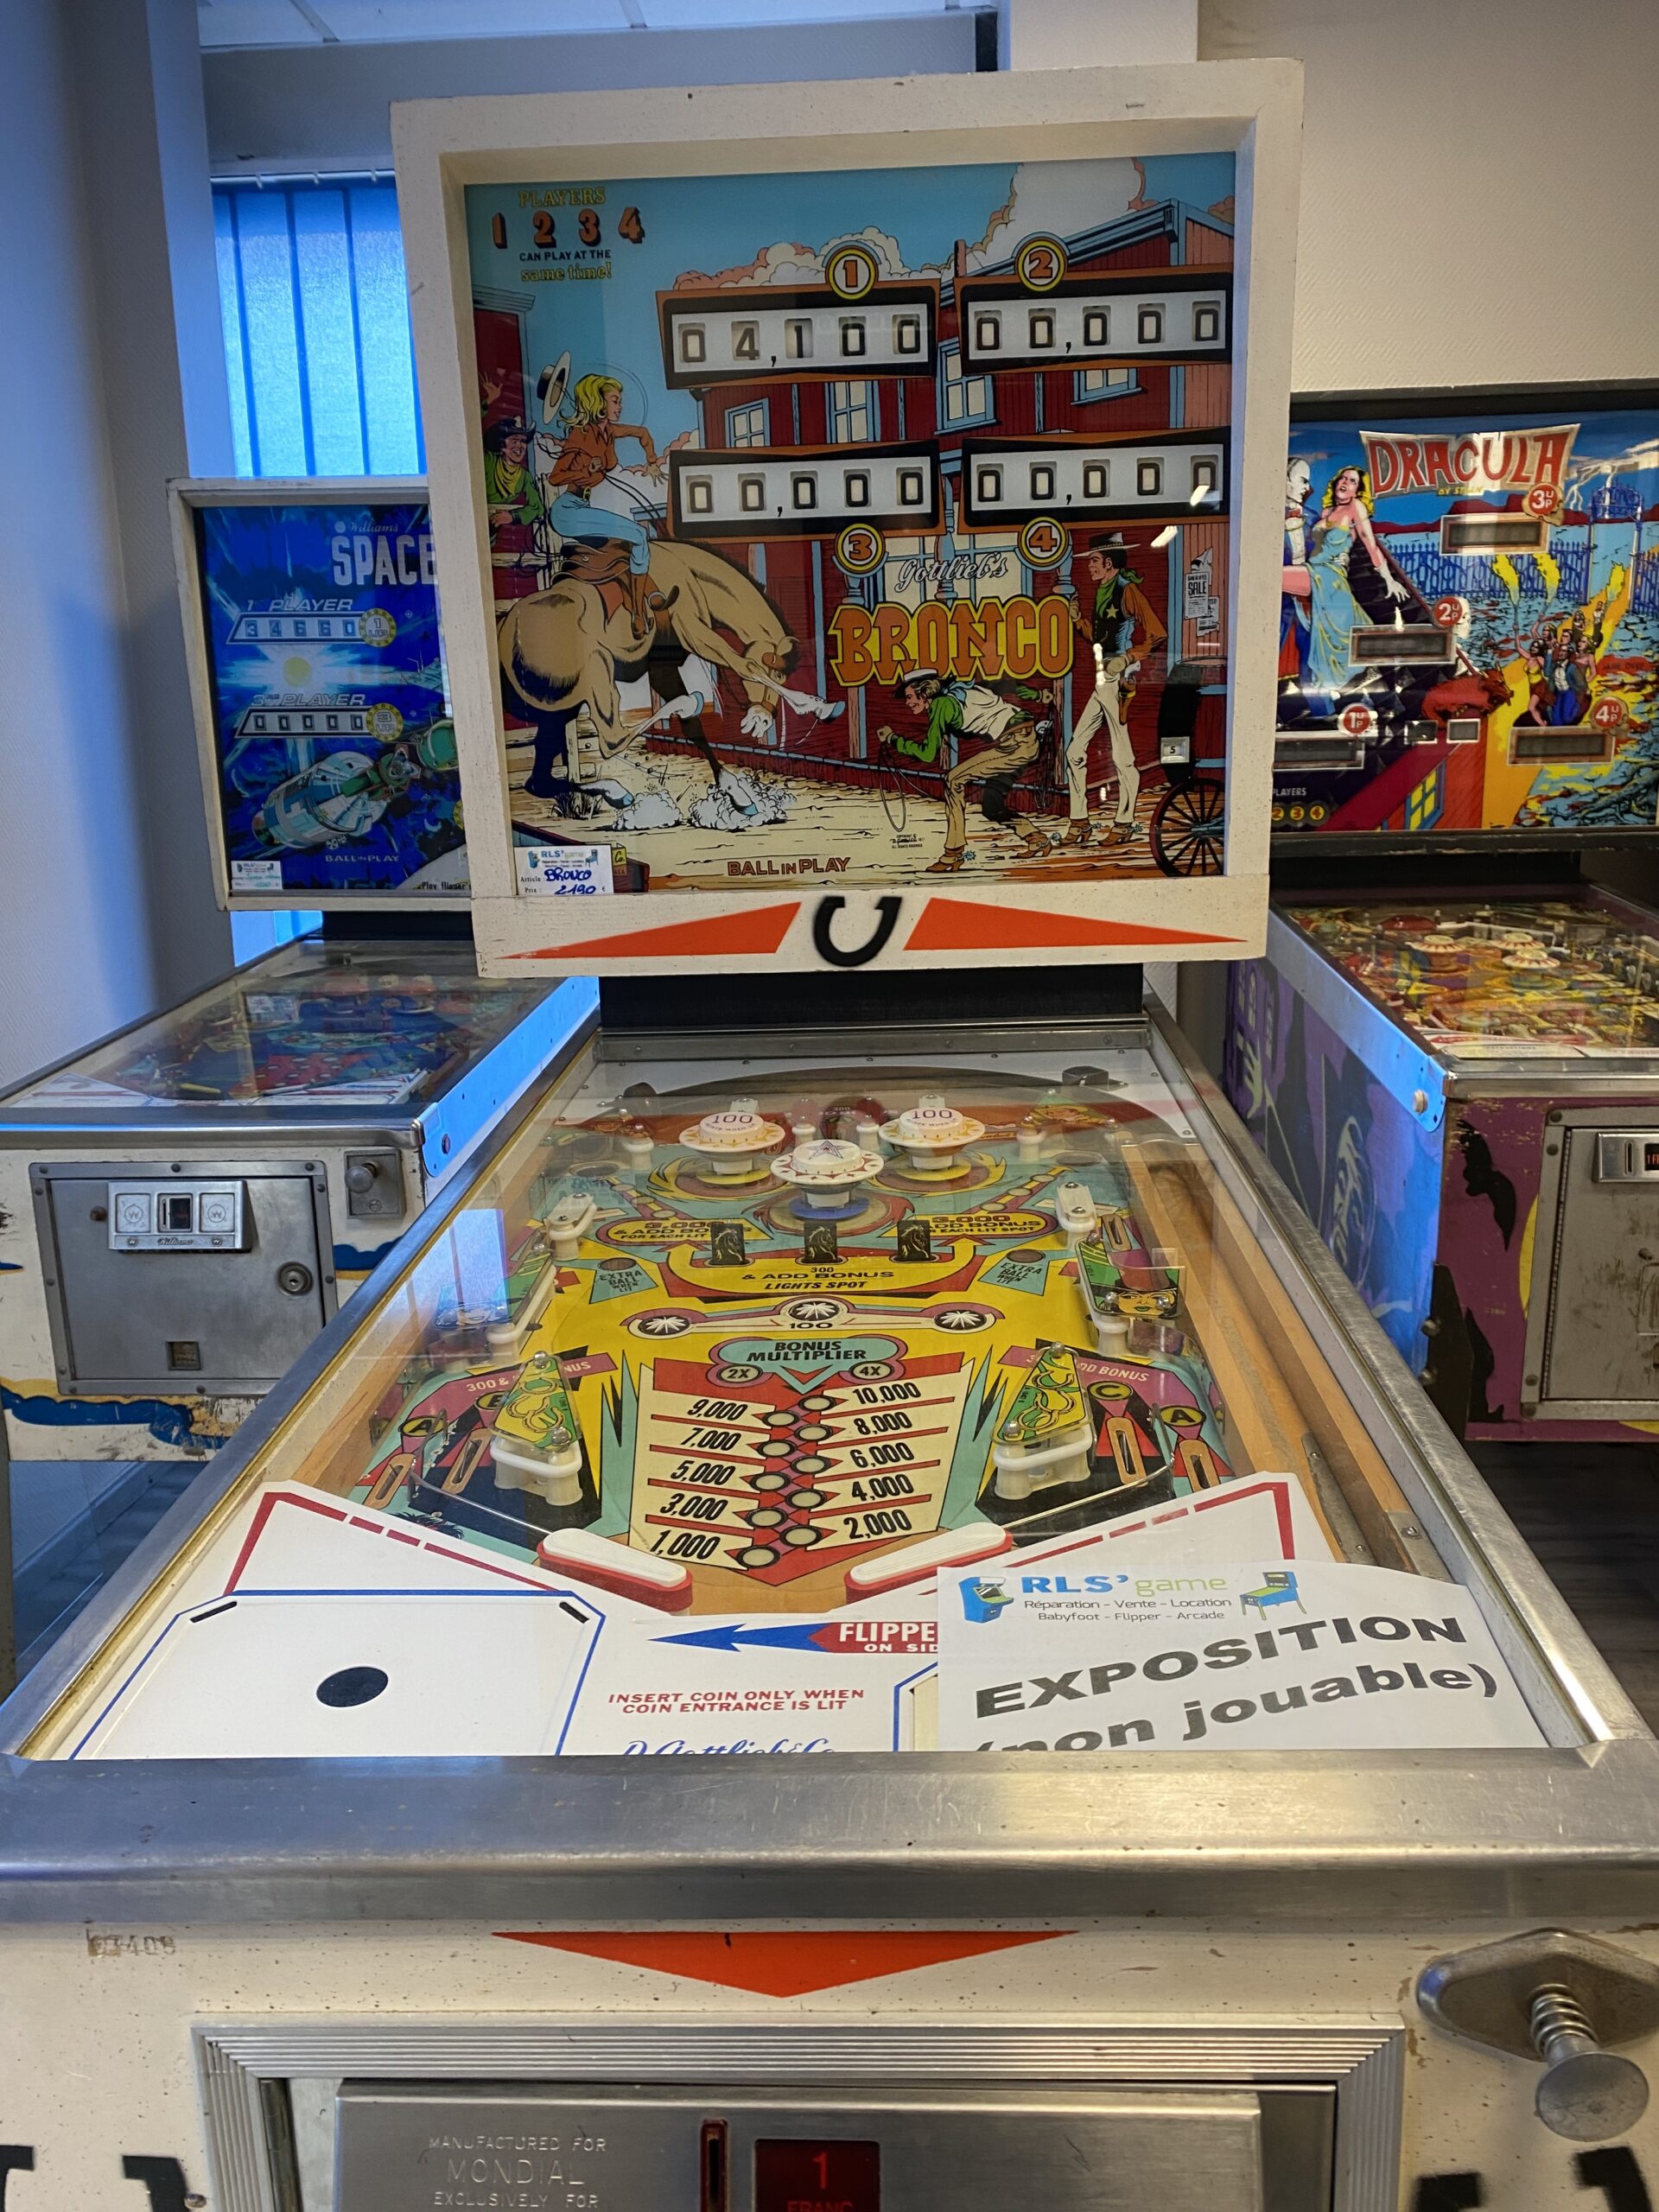 Flipper et arcade près d'Angers : jeux de café vintage neuf ou